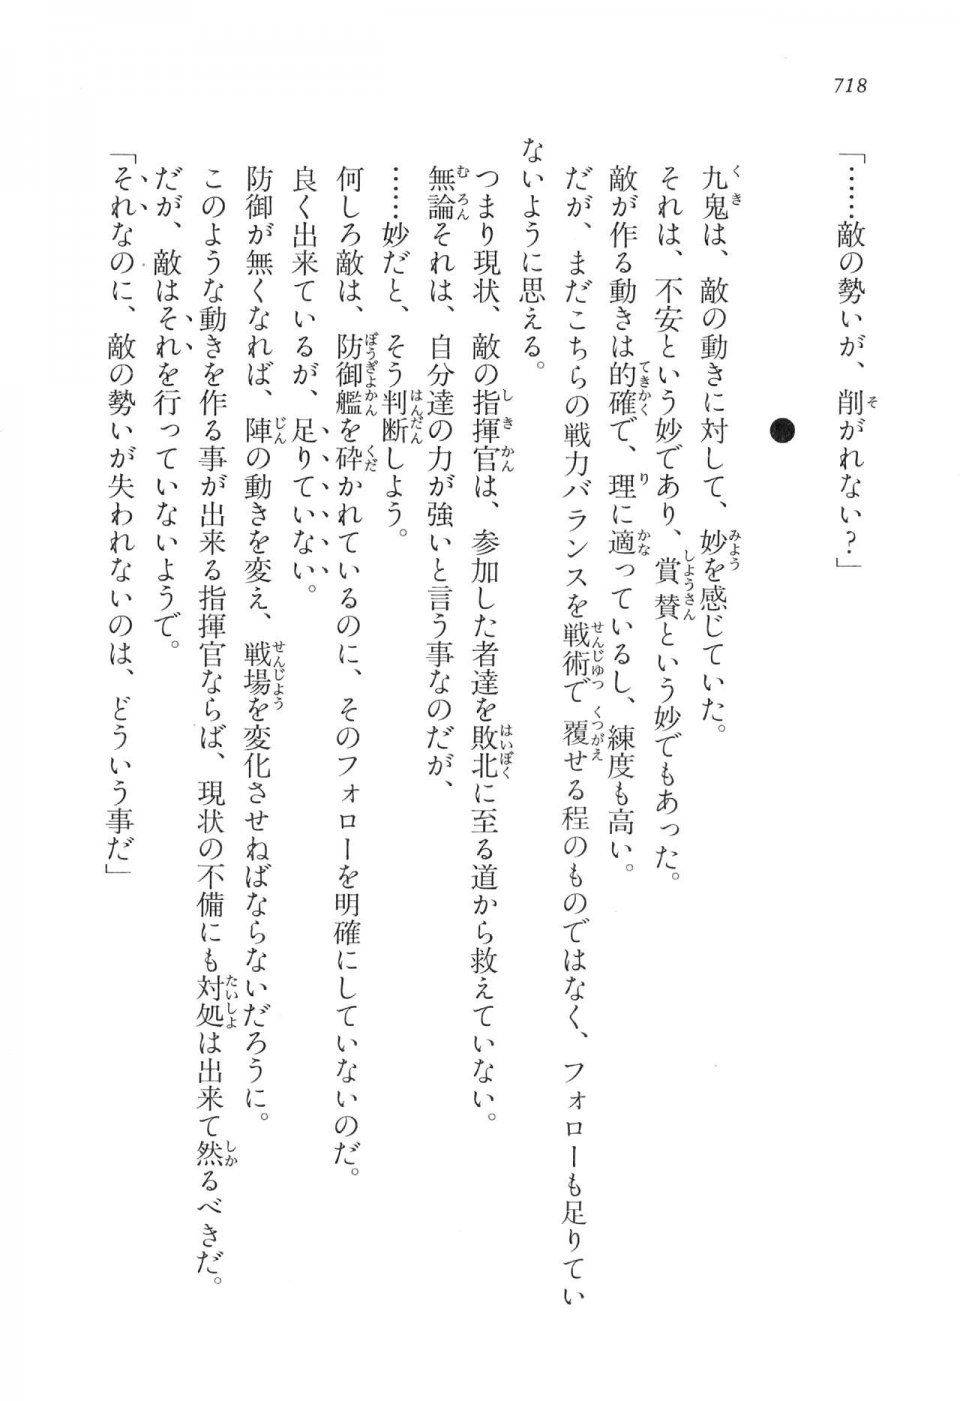 Kyoukai Senjou no Horizon LN Vol 16(7A) - Photo #718